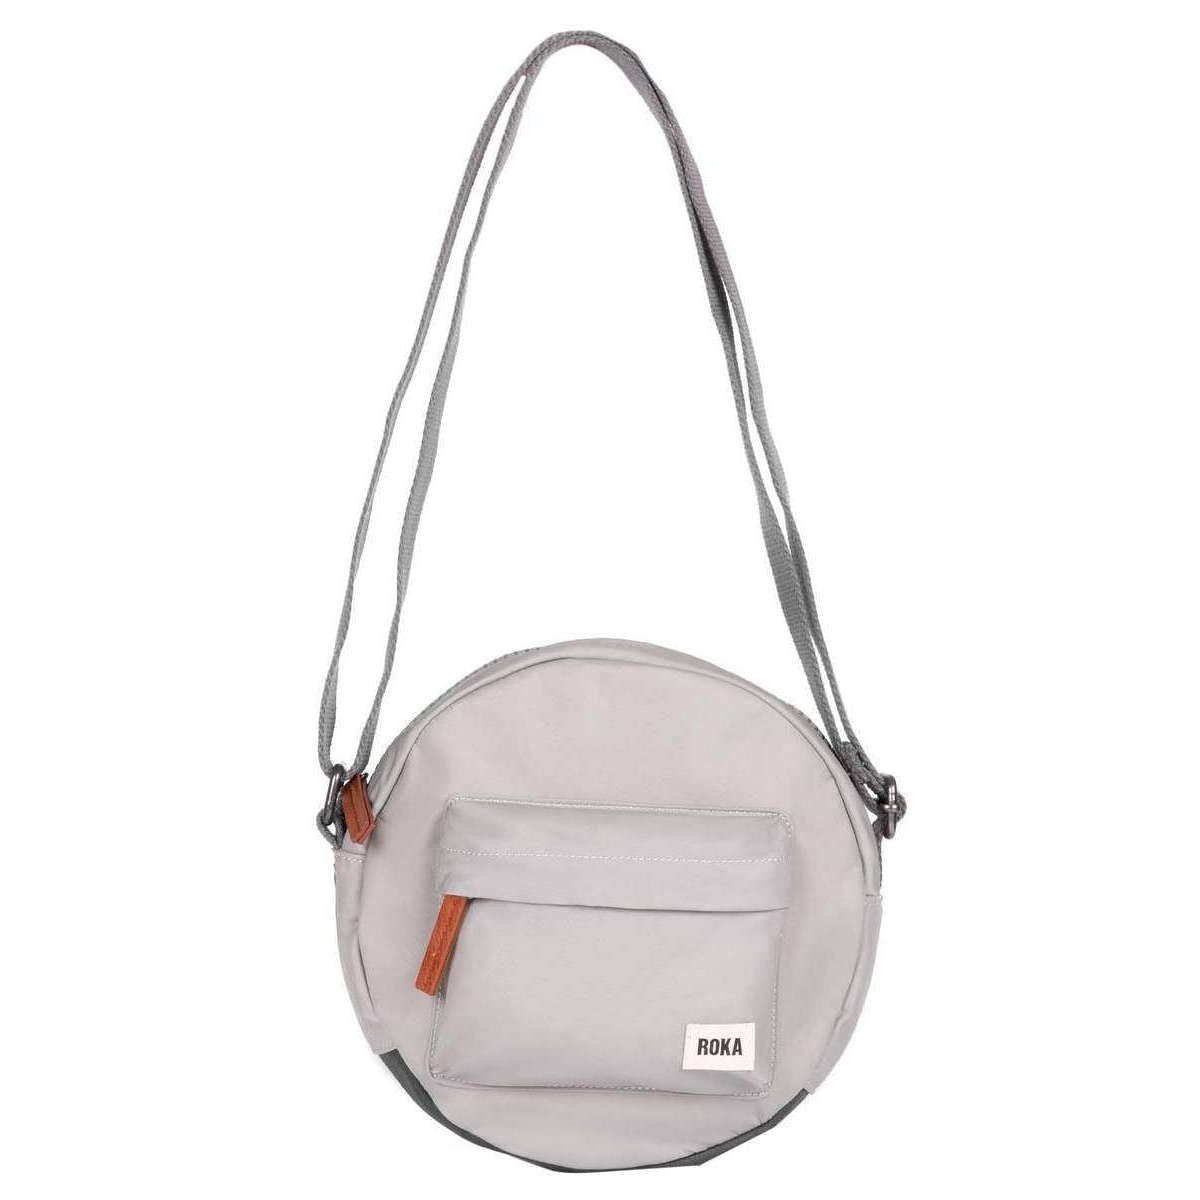 Roka Paddington B Small Sustainable Nylon Crossbody Bag - Mist Grey